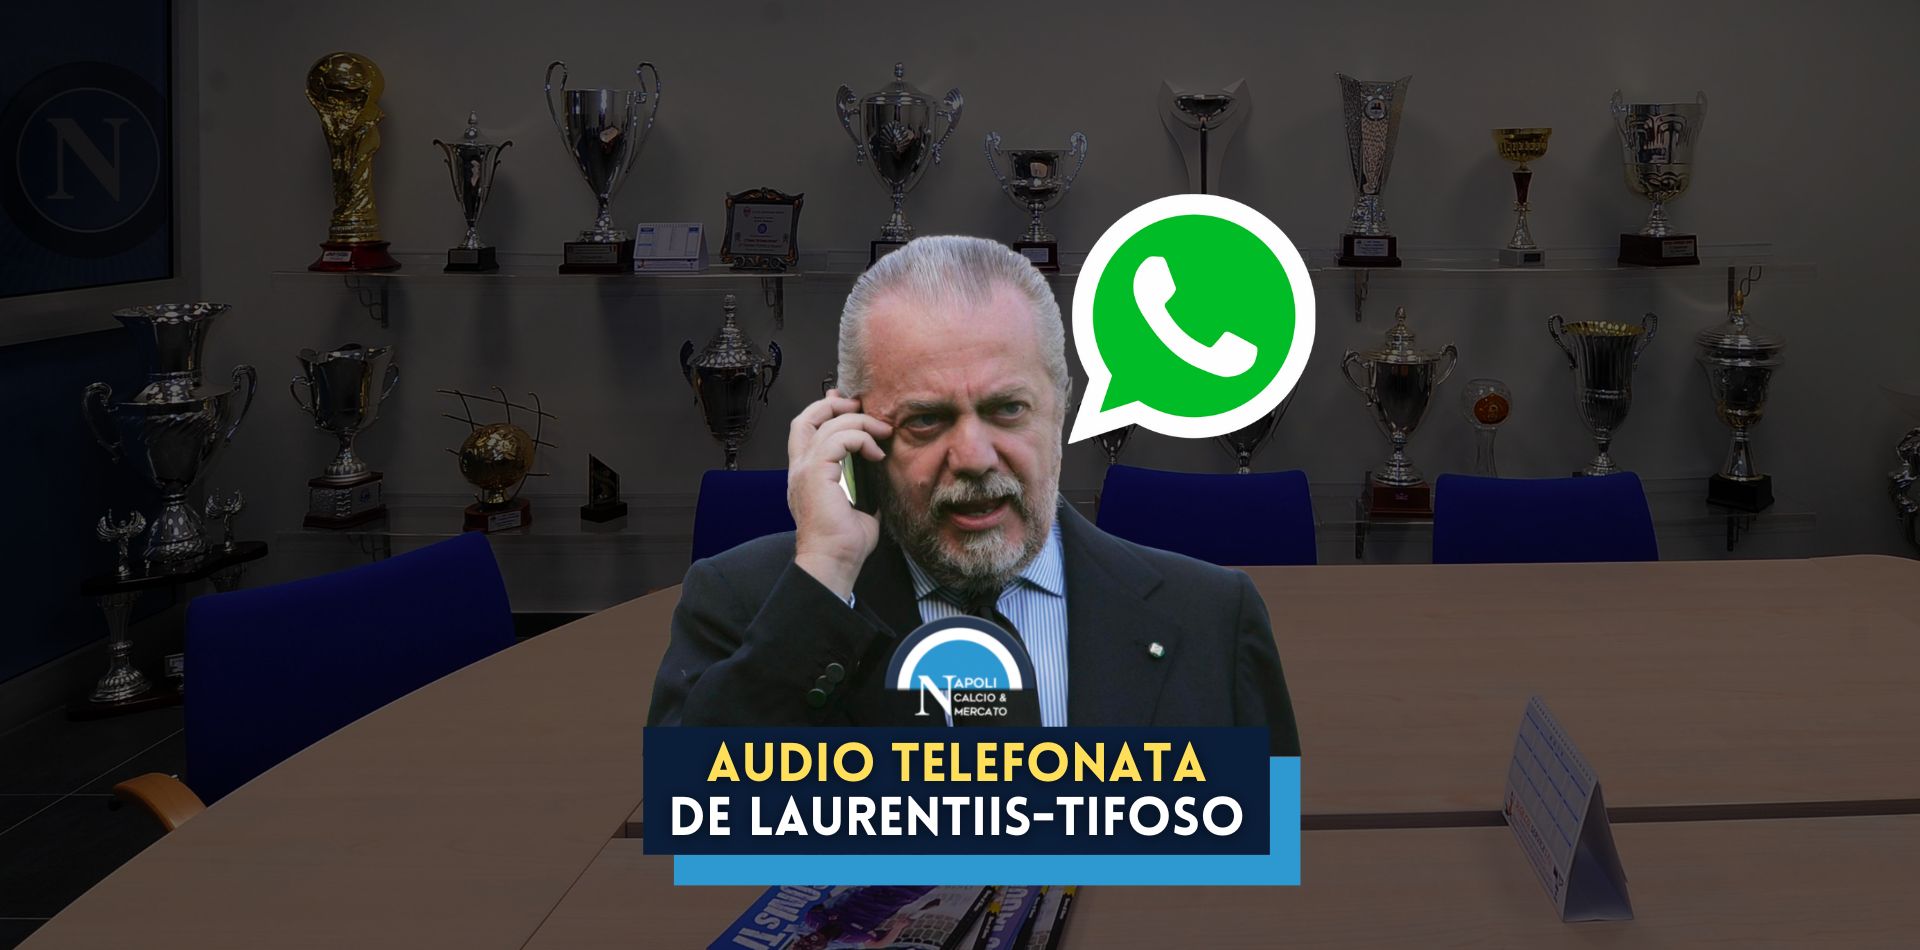 audio telefonata aurelio de laurentiis tifoso 100 milioni scudetto champions league